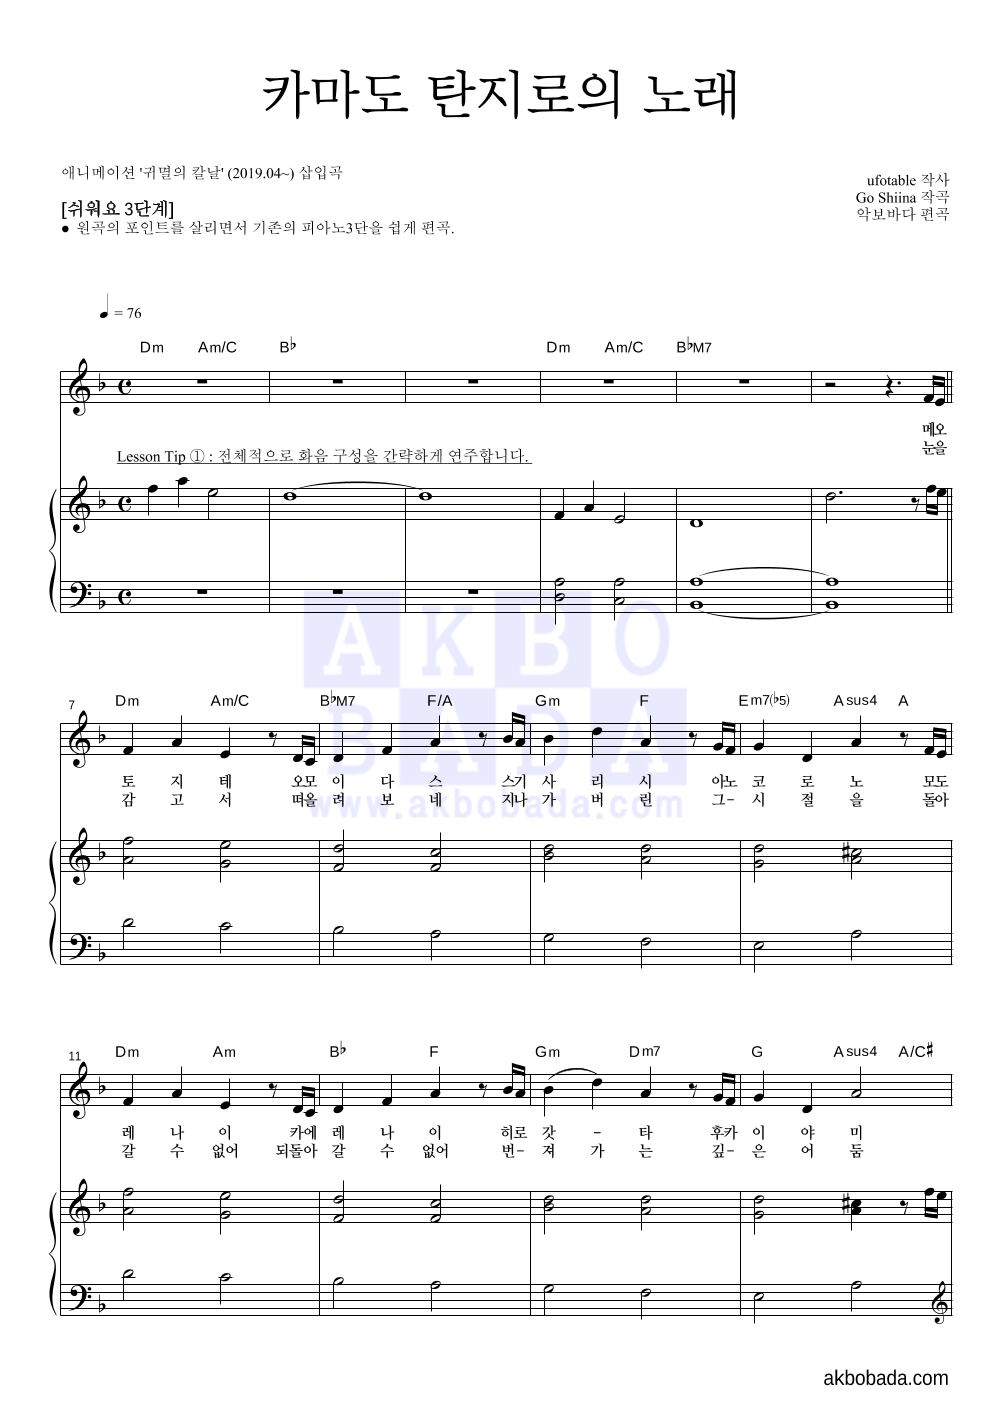 귀멸의 칼날 OST - 카마도 탄지로의 노래 피아노3단-쉬워요 악보 